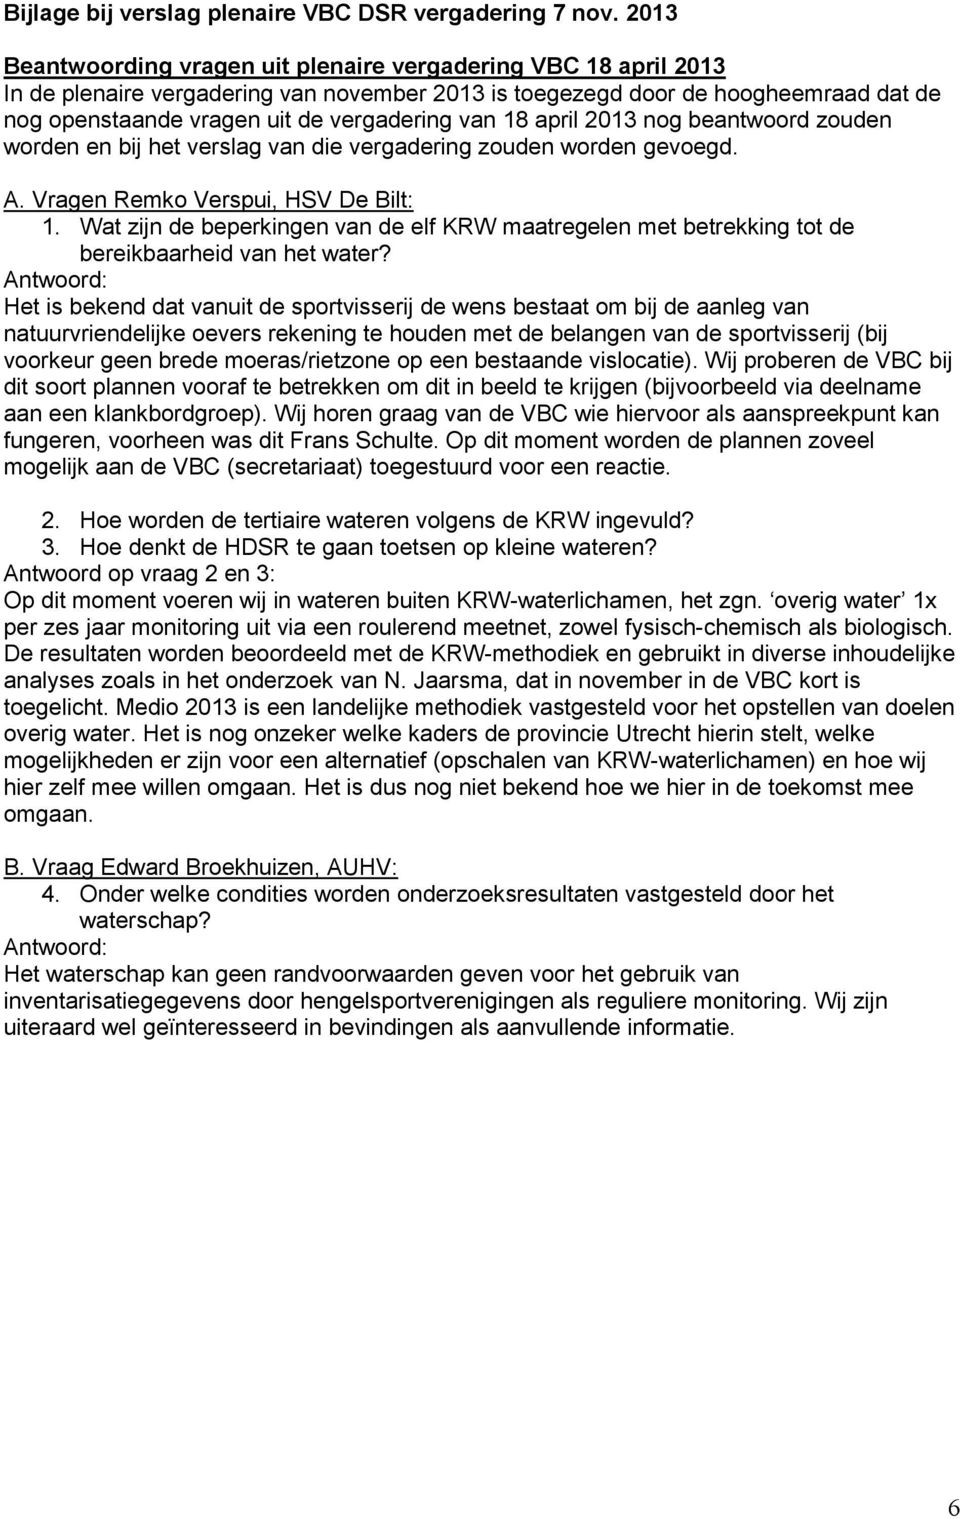 van 18 april 2013 nog beantwoord zouden worden en bij het verslag van die vergadering zouden worden gevoegd. A. Vragen Remko Verspui, HSV De Bilt: 1.